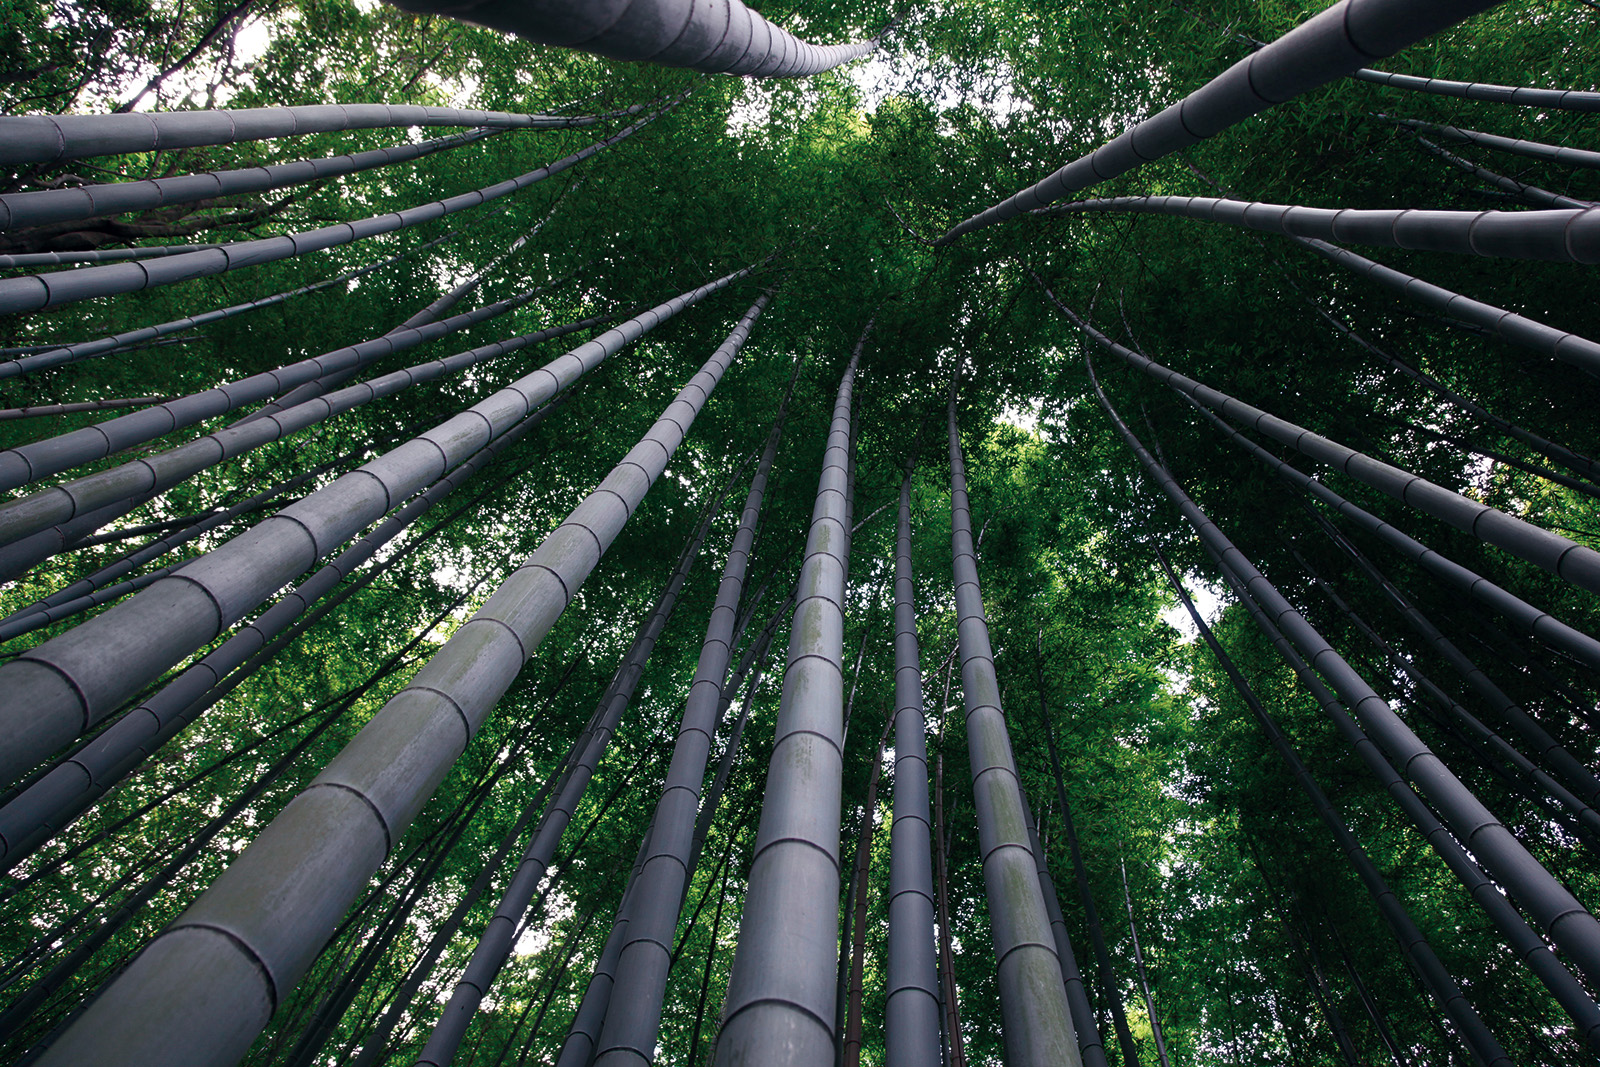 Bamboo forest - Arashiyama district in Kyoto Japan